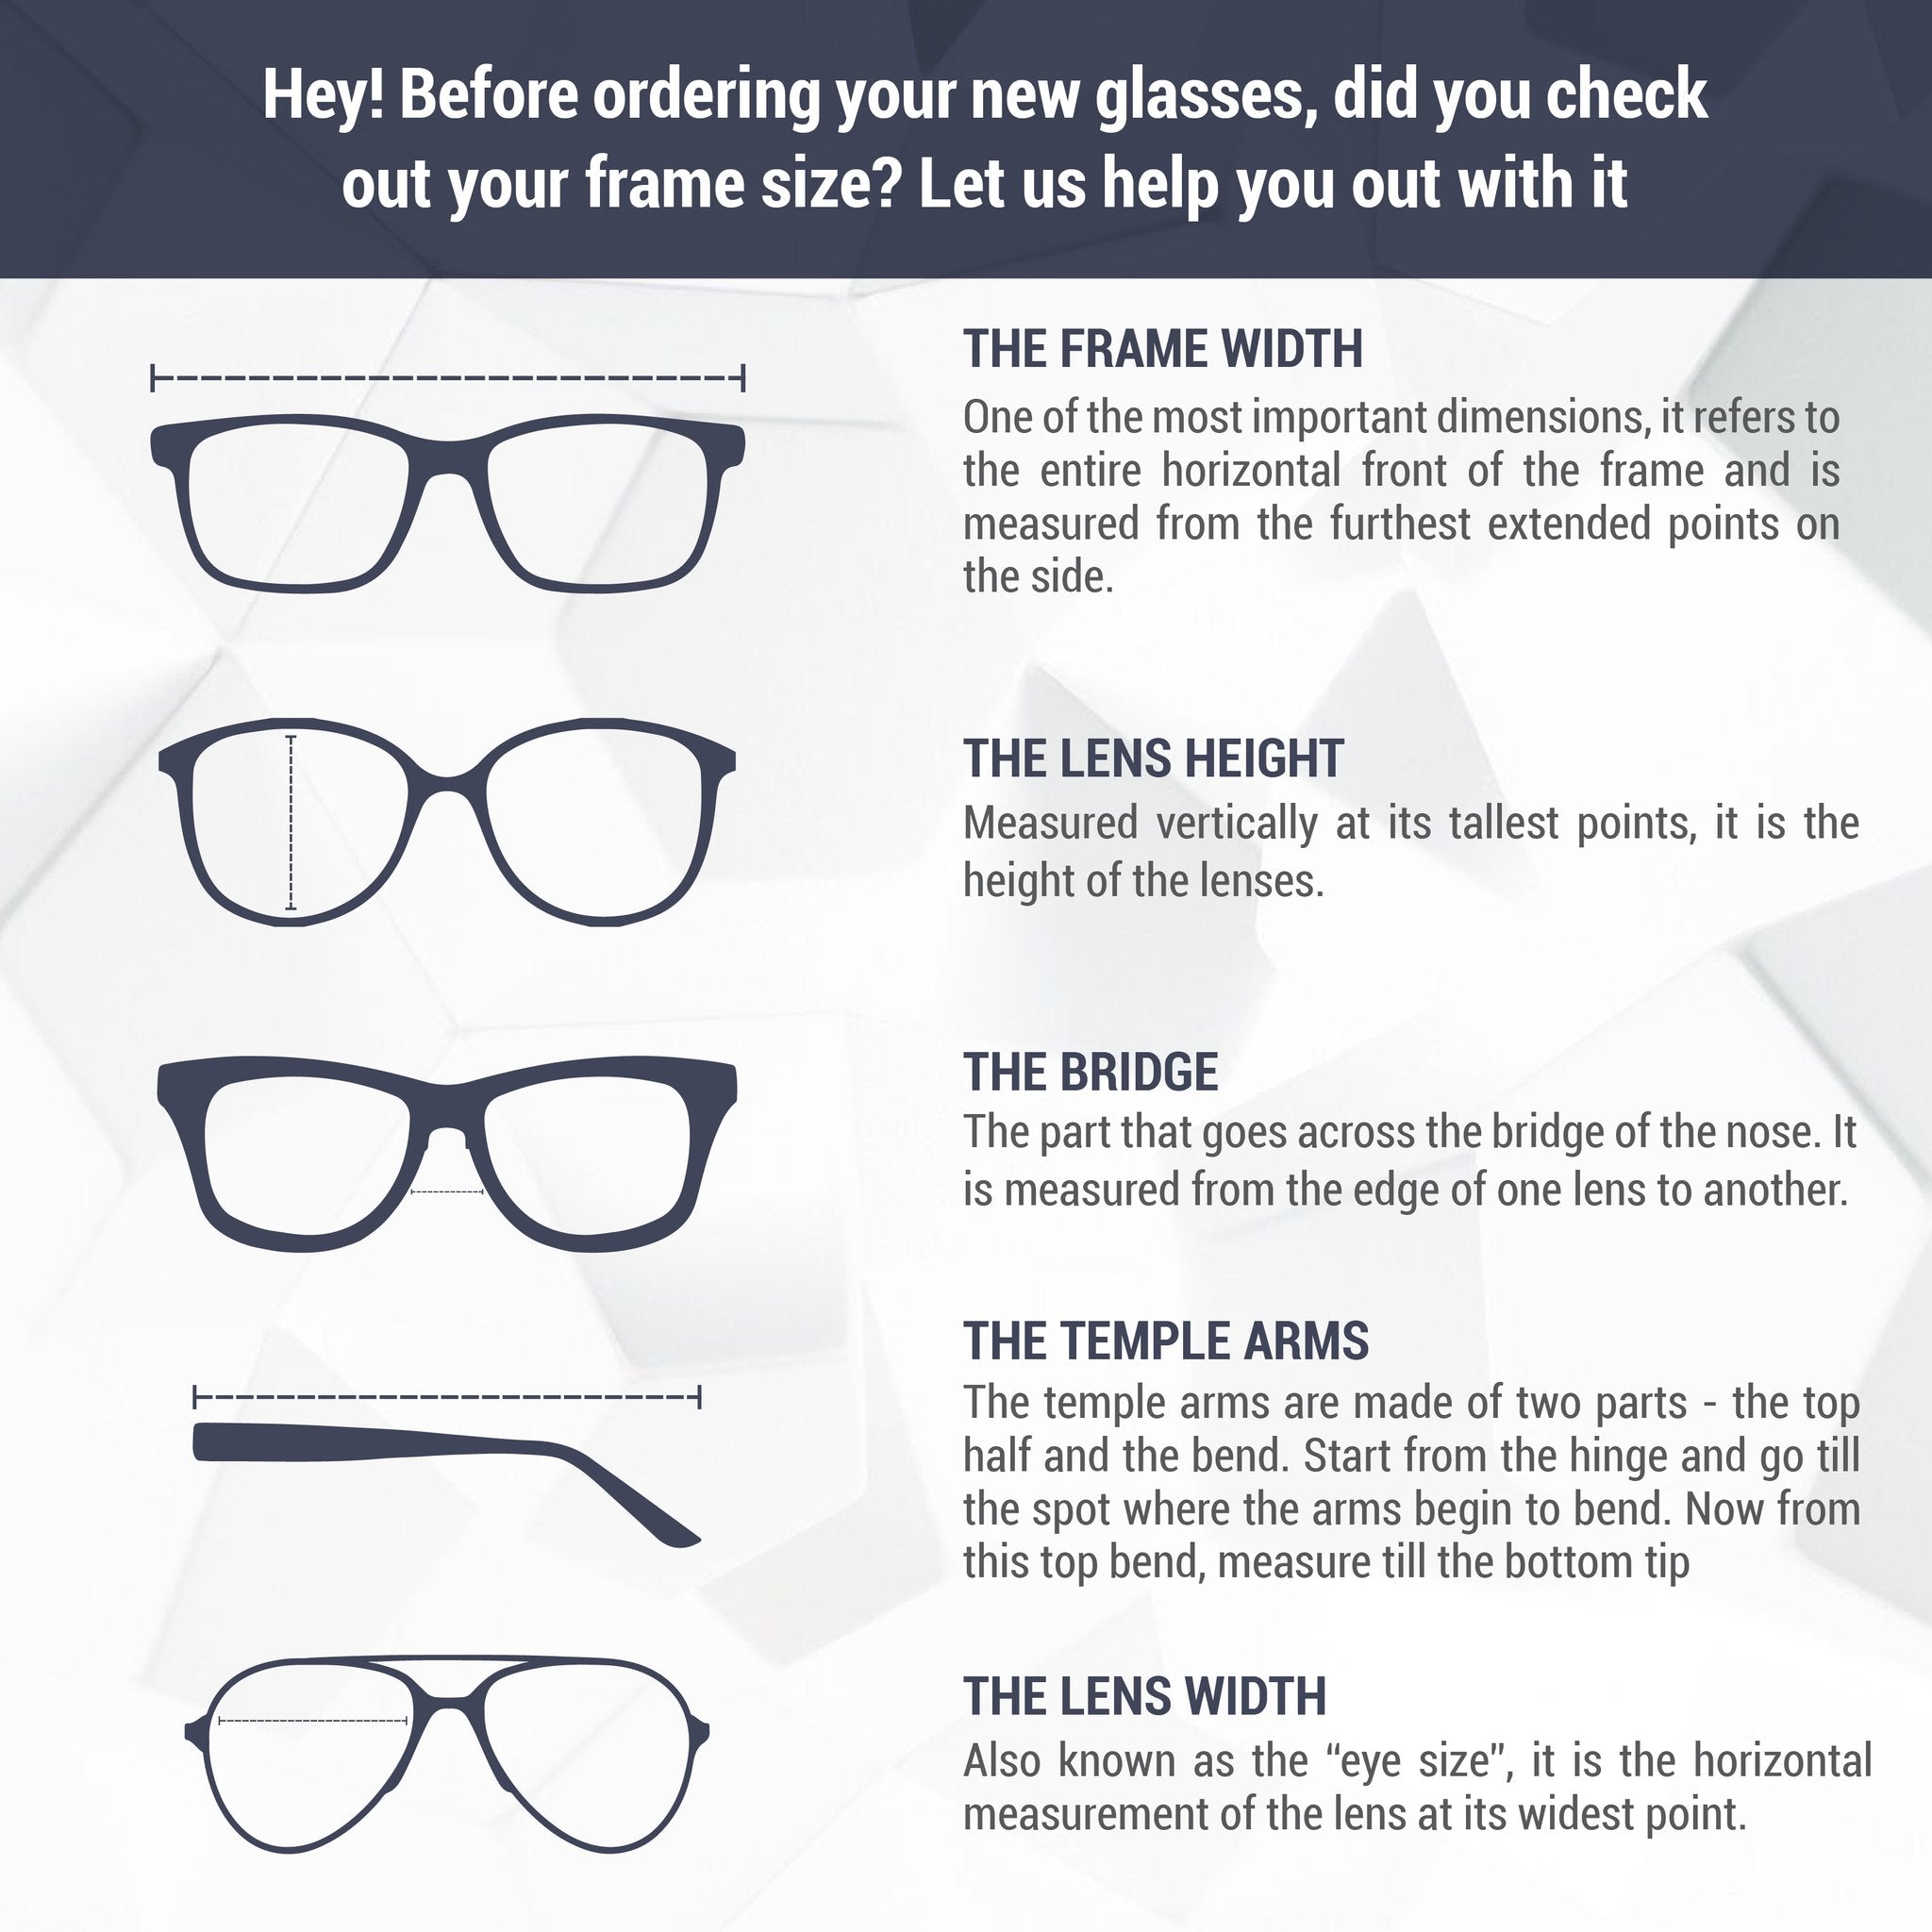 Montatura per occhiali Tommy Hilfiger | Modello TH1641